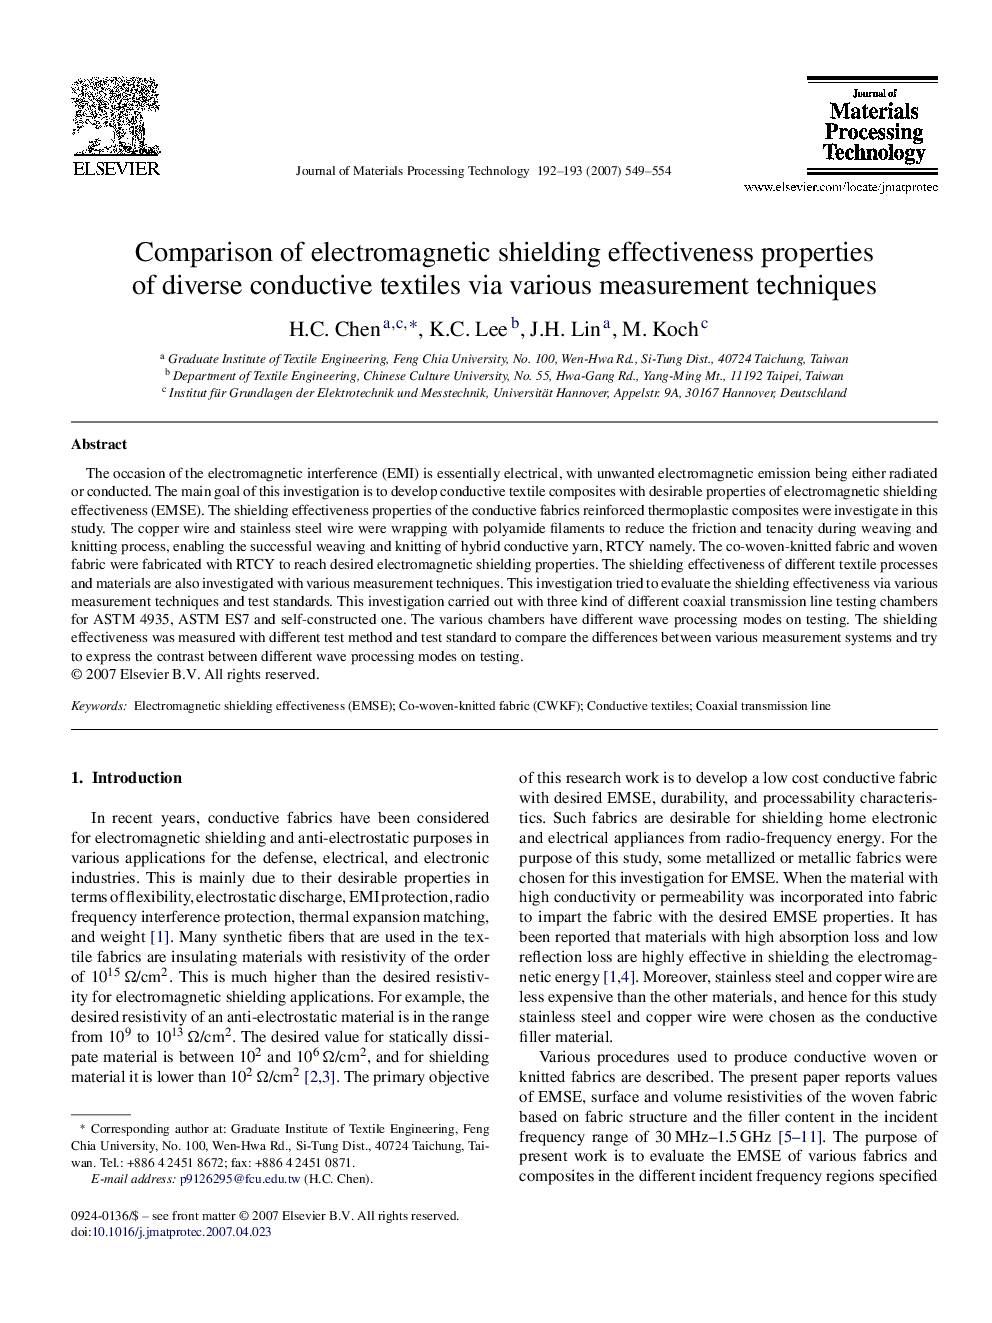 Comparison of electromagnetic shielding effectiveness properties of diverse conductive textiles via various measurement techniques